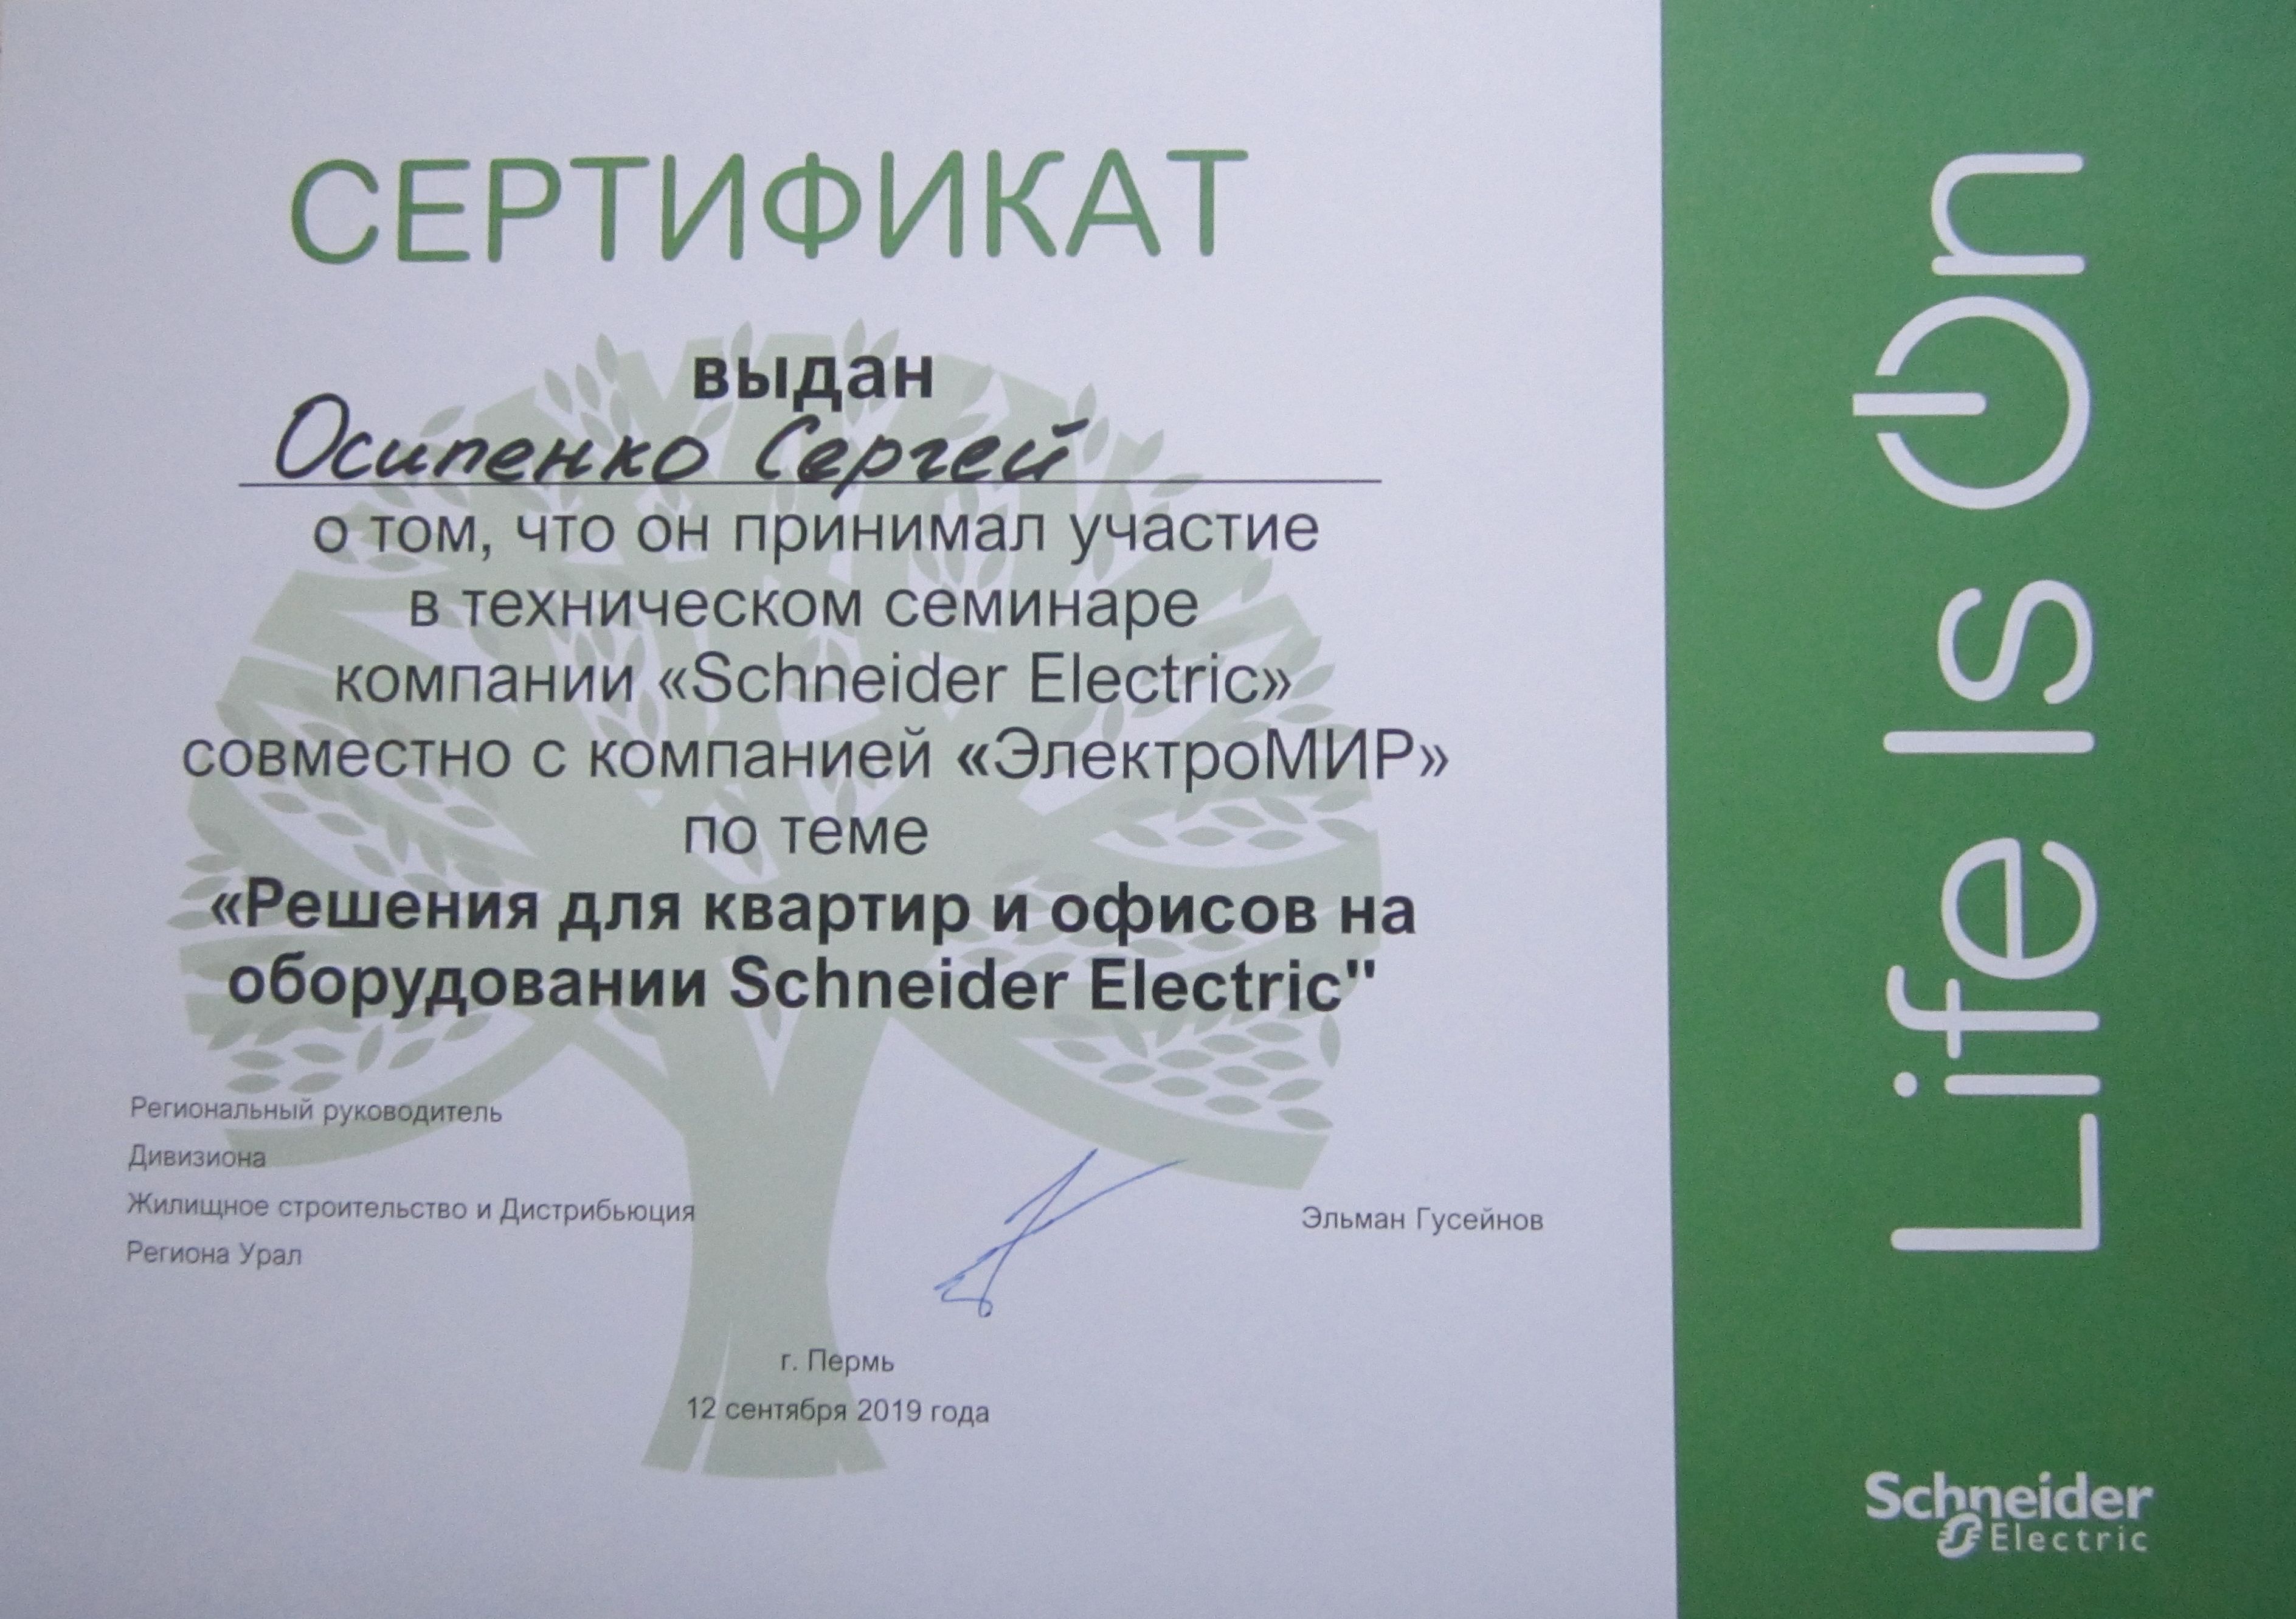 Технический семинар компании «Schneider Electric»   совместно с компанией «Электромир». Решения для квартир и офисов на оборудовании Schneider Electric. 12 сентября 2019 года.